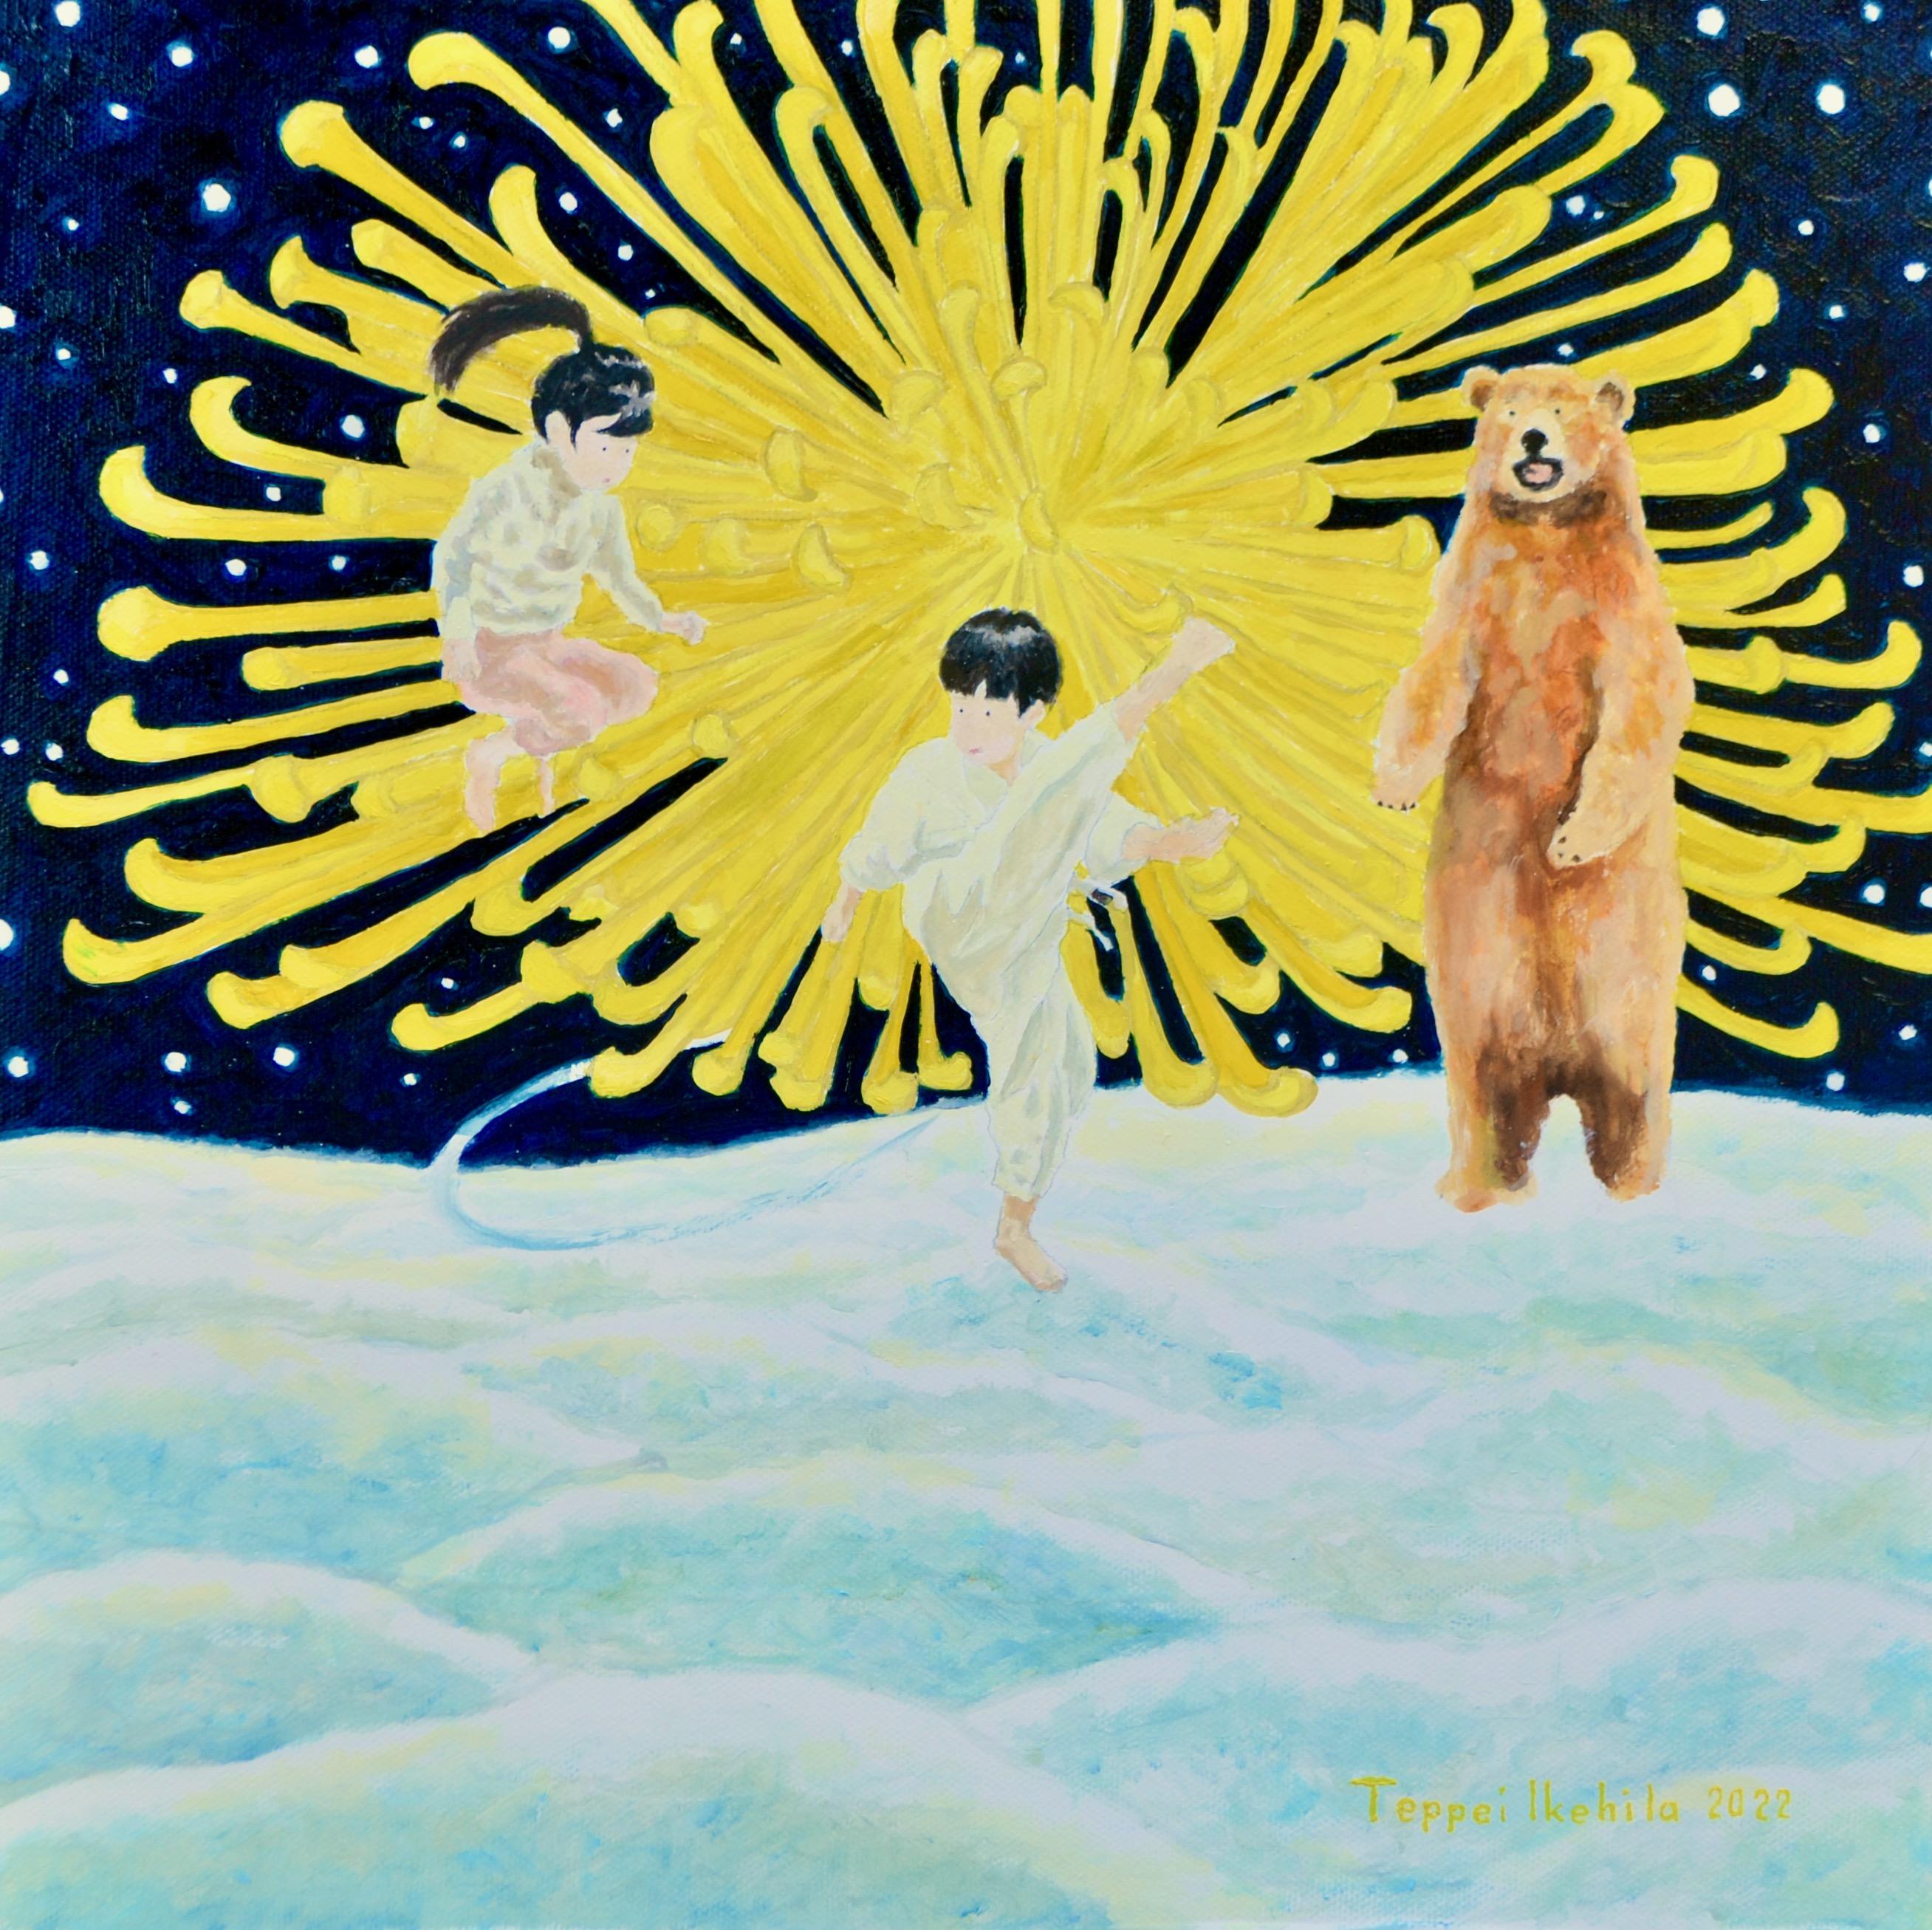 Art contemporain japonais de Teppei Ikehila - The Bear Wants you to Stop Fight (L'ours veut que vous arrêtiez de vous battre)